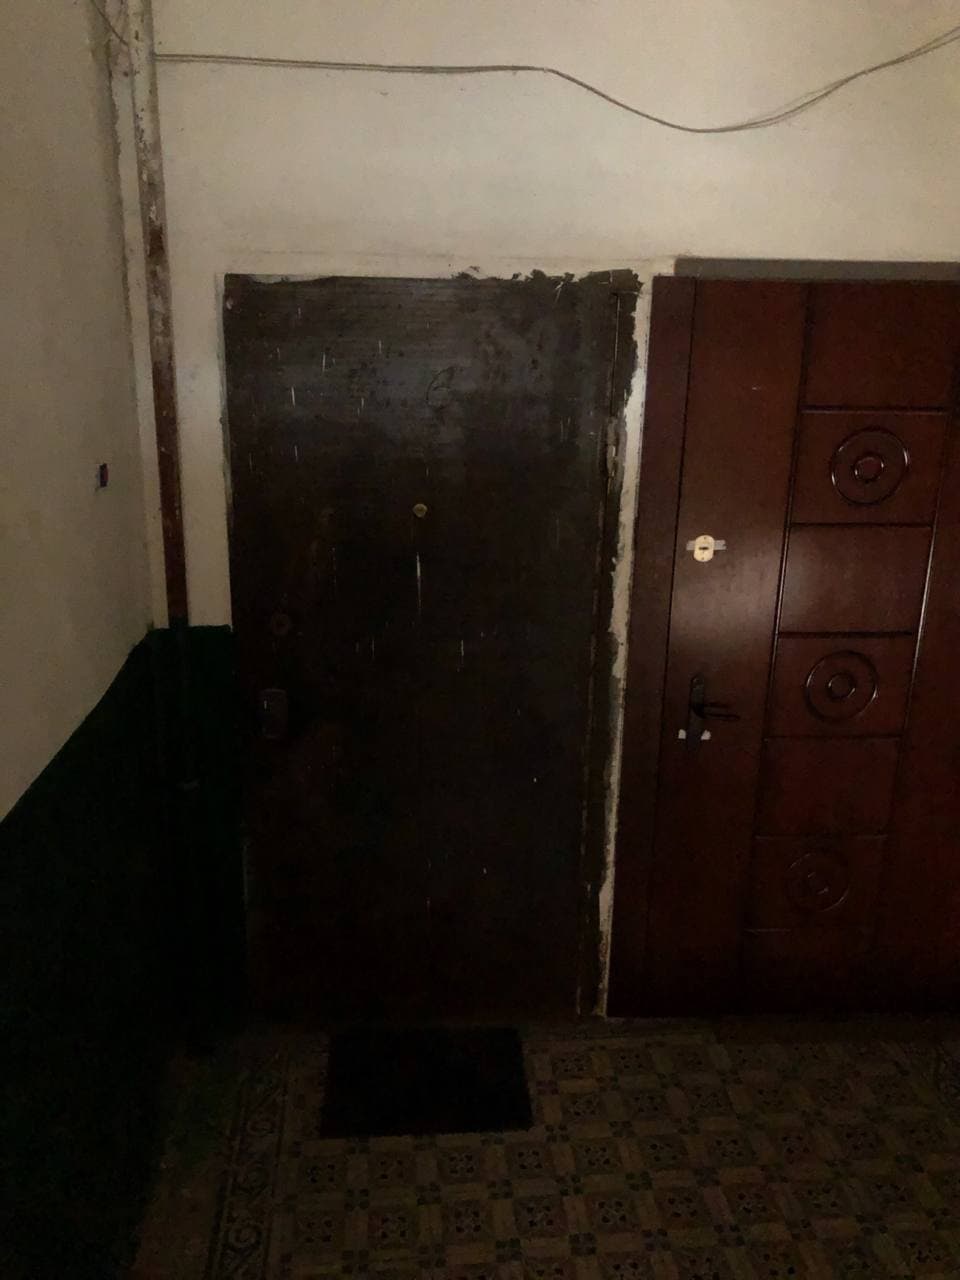 У Тернополі продають квартиру, вхід до якої замурований (фото)